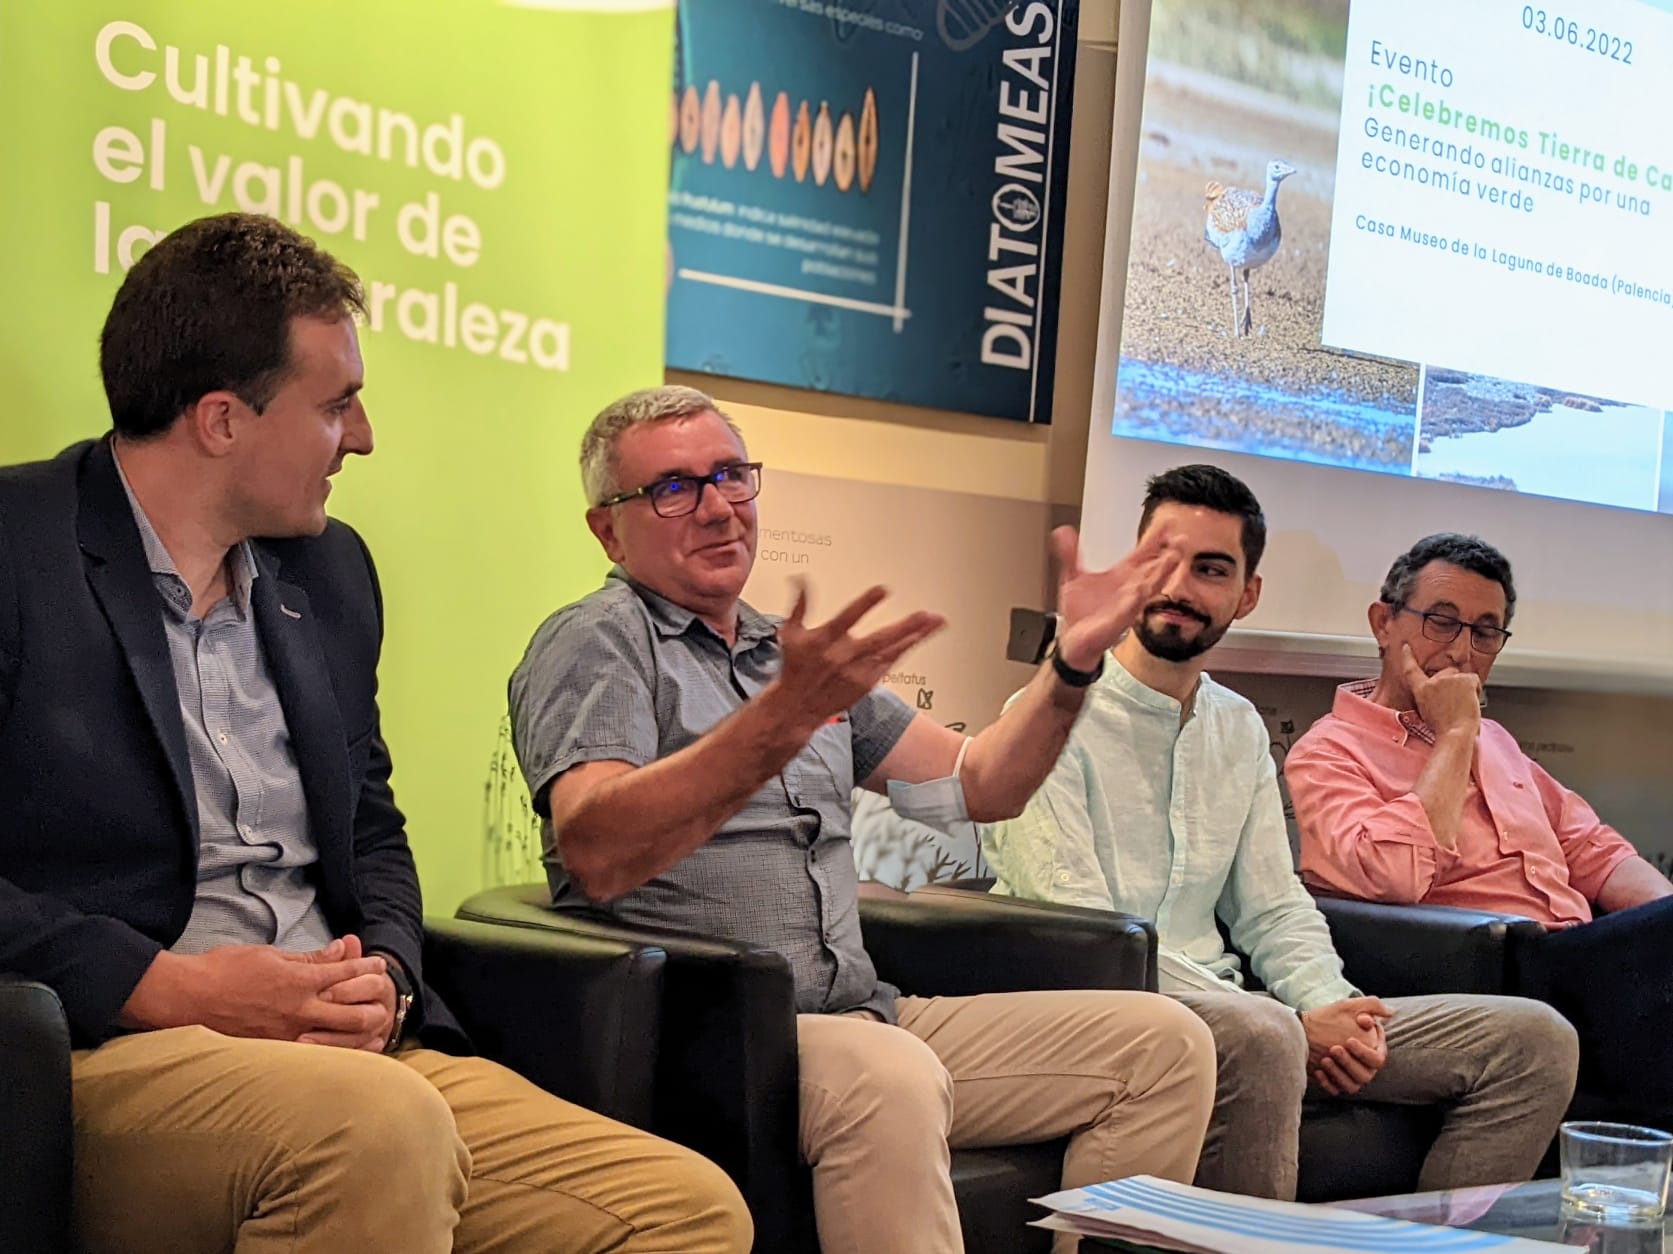 Generando alianzas por una economía verde en Tierra de Campos